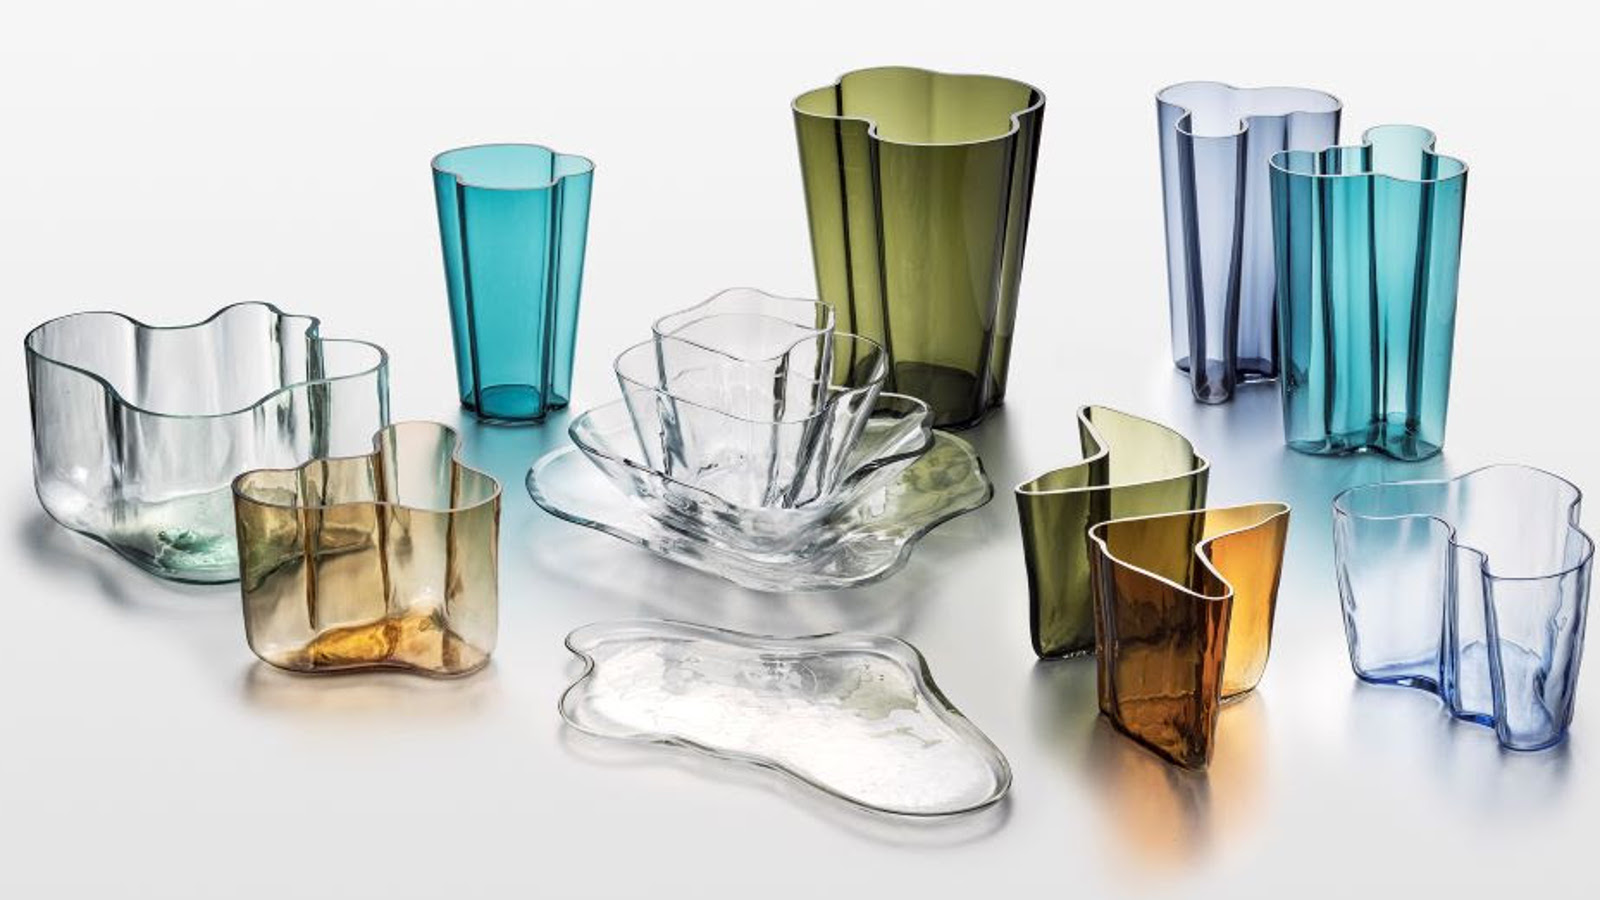 Kuvassa on  Iittalan Alvar Aalto -kokoelman erivärisiä lasiesineitä kuten maljakoita ja maljoja.